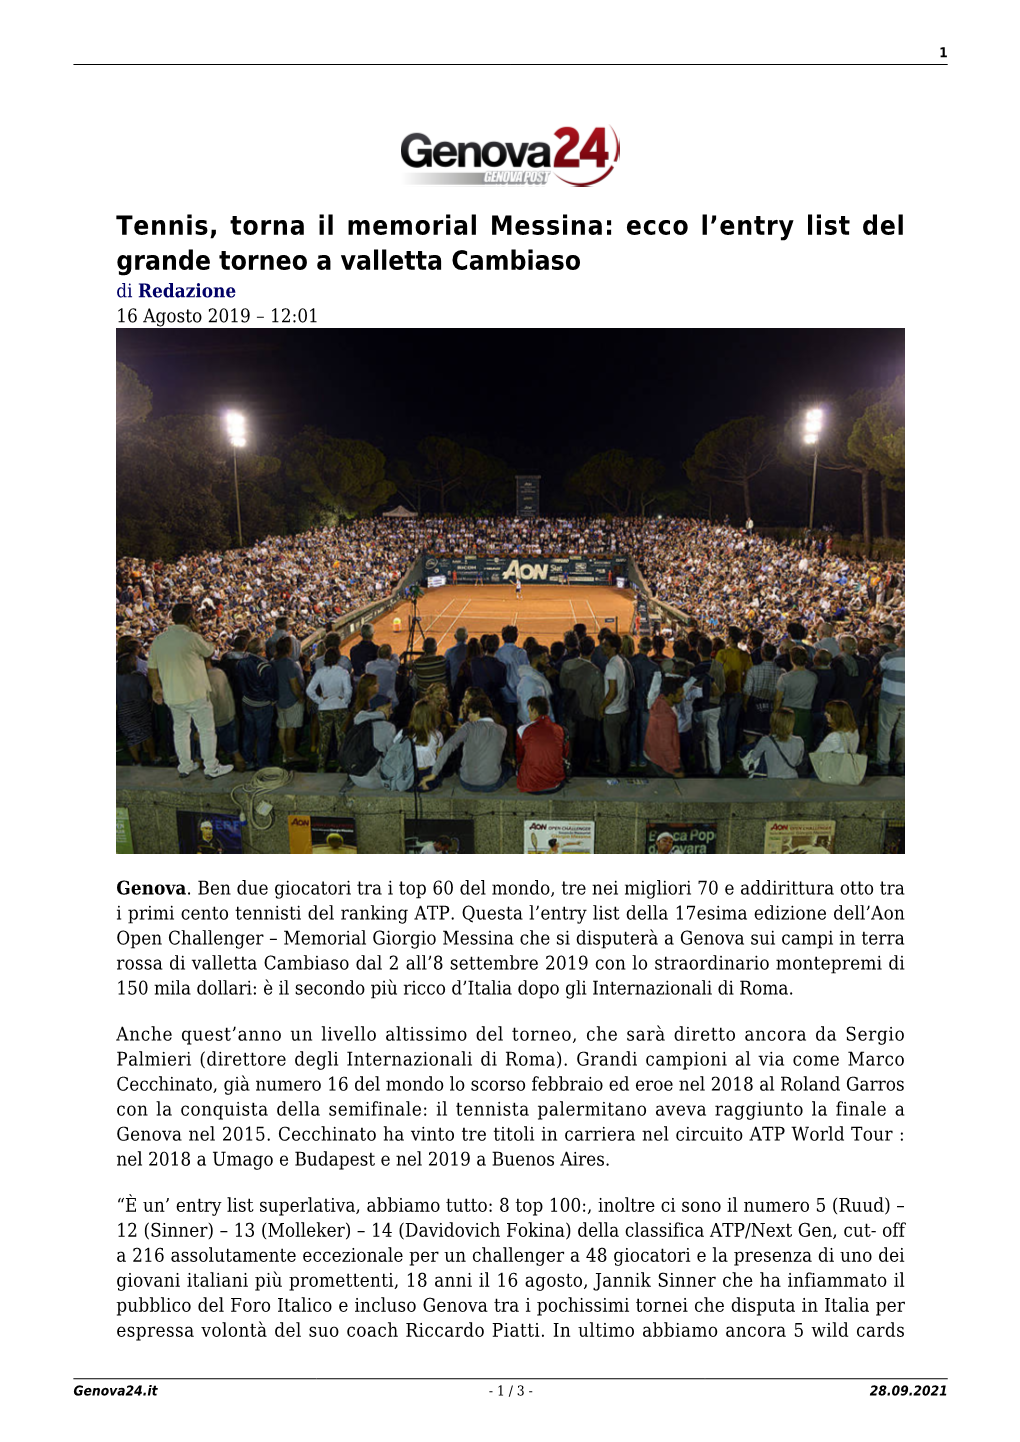 Tennis, Torna Il Memorial Messina: Ecco L'entry List Del Grande Torneo A